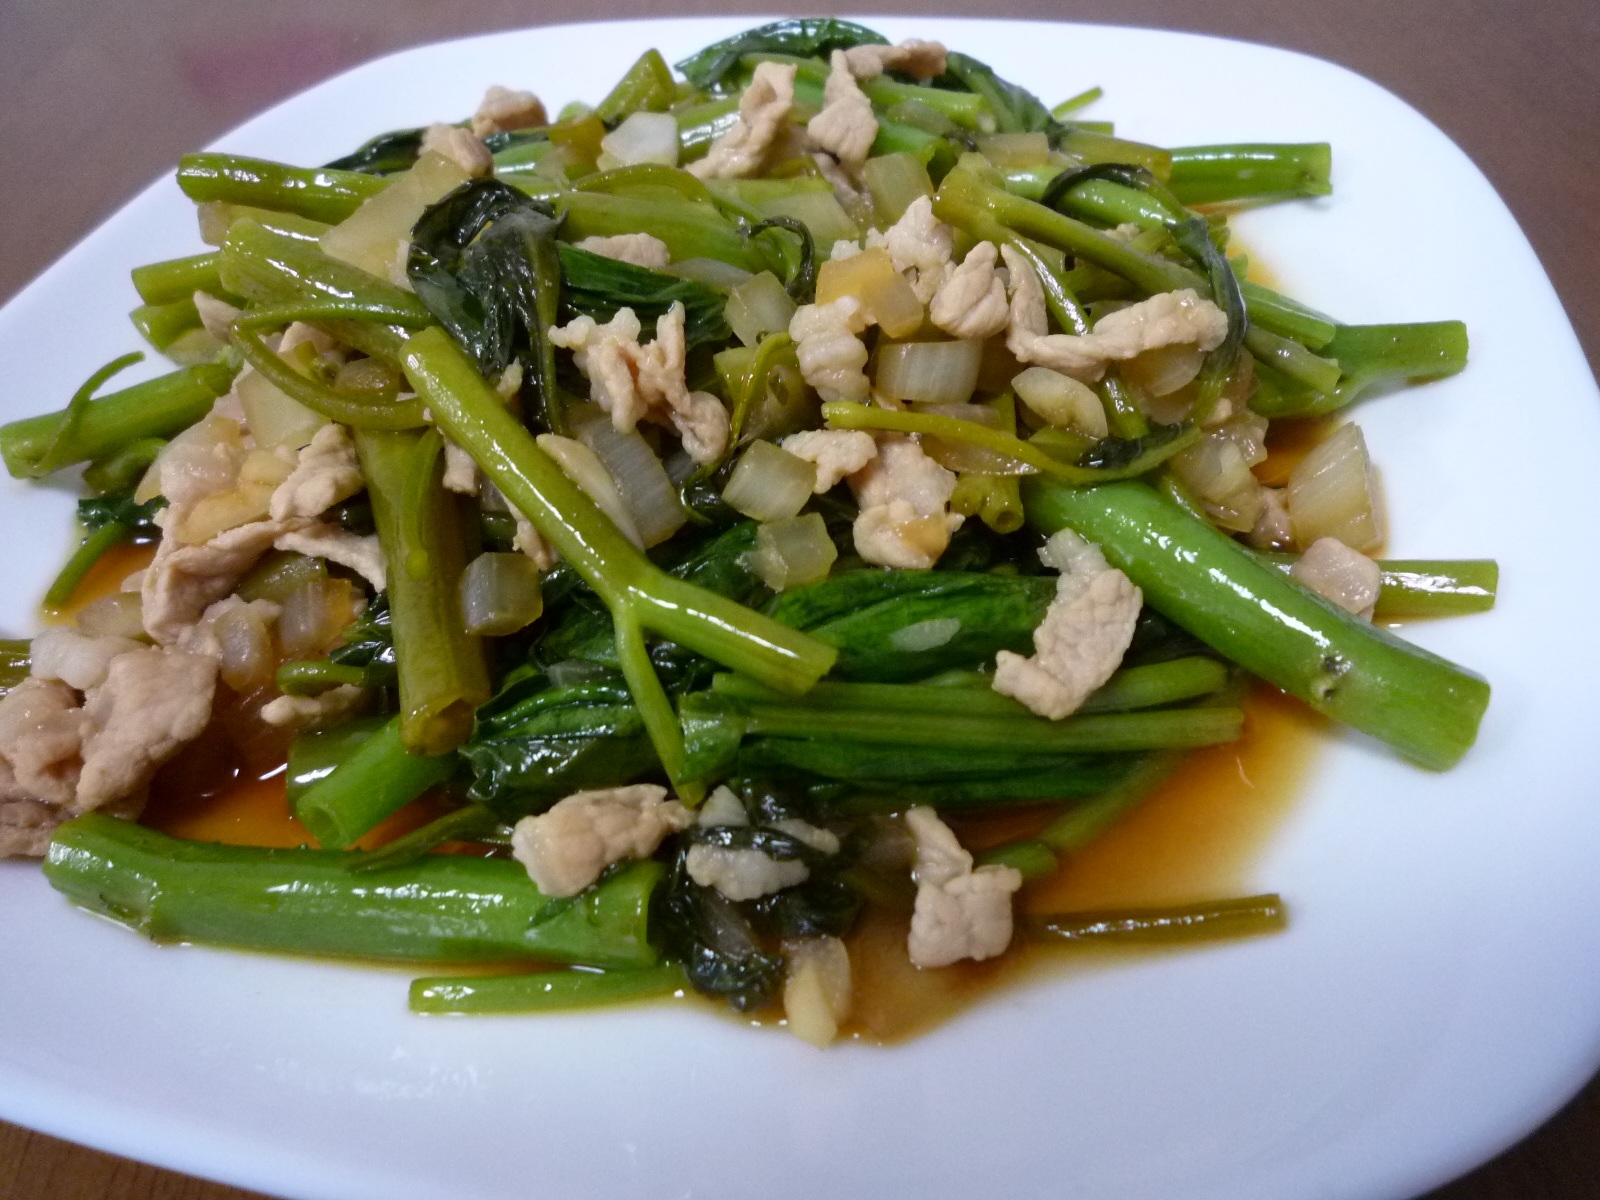 アドボ カンコン フィリピン風 空芯菜の炒め煮 レシピ カレーのレシピを研究してみるブログ